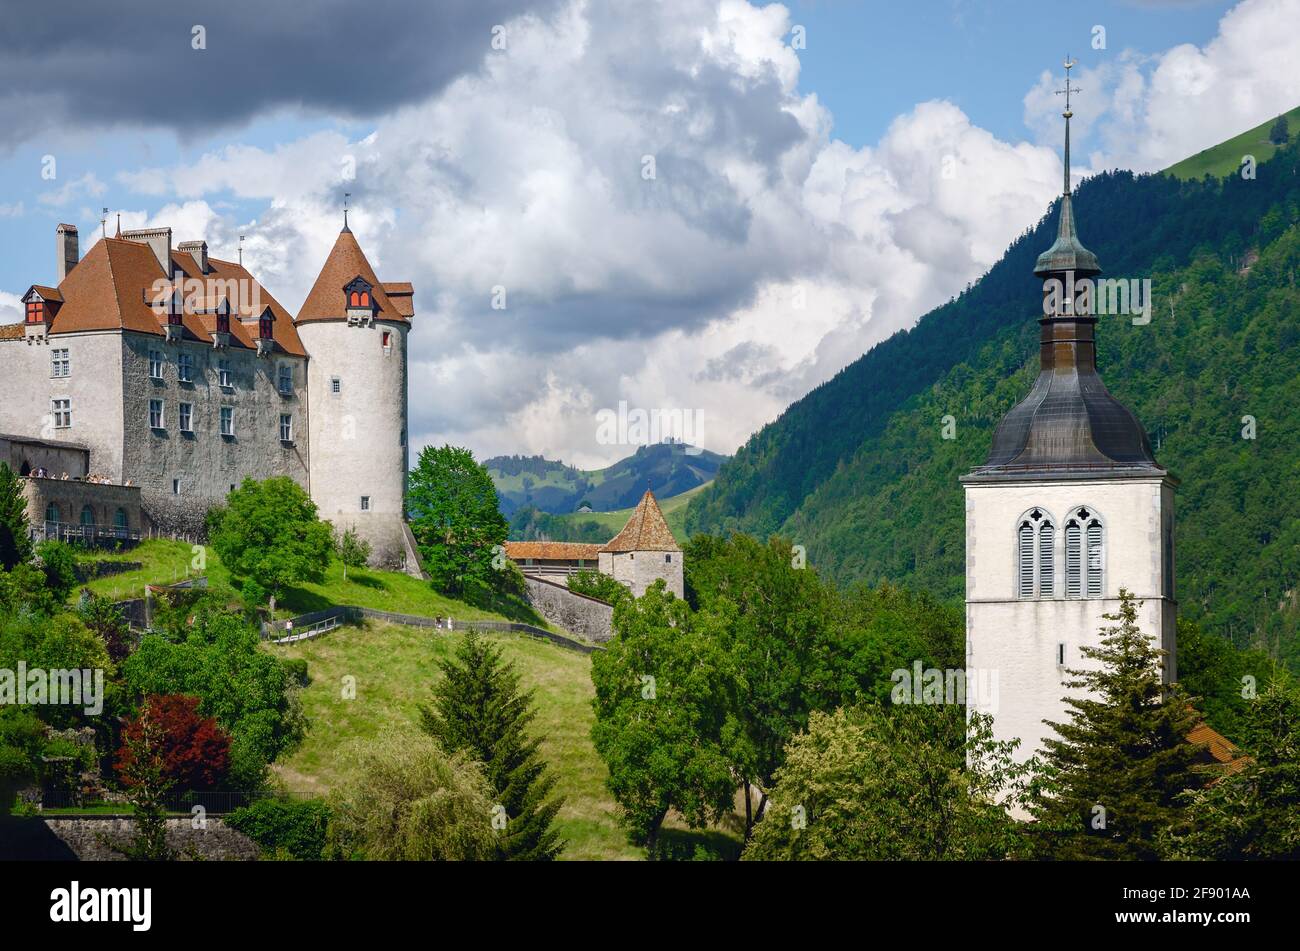 Vista esterna del villaggio di Gruyeres, famosa città casearia della svizzera, con il suo castello medievale e il campanile in cima alle colline su Foto Stock